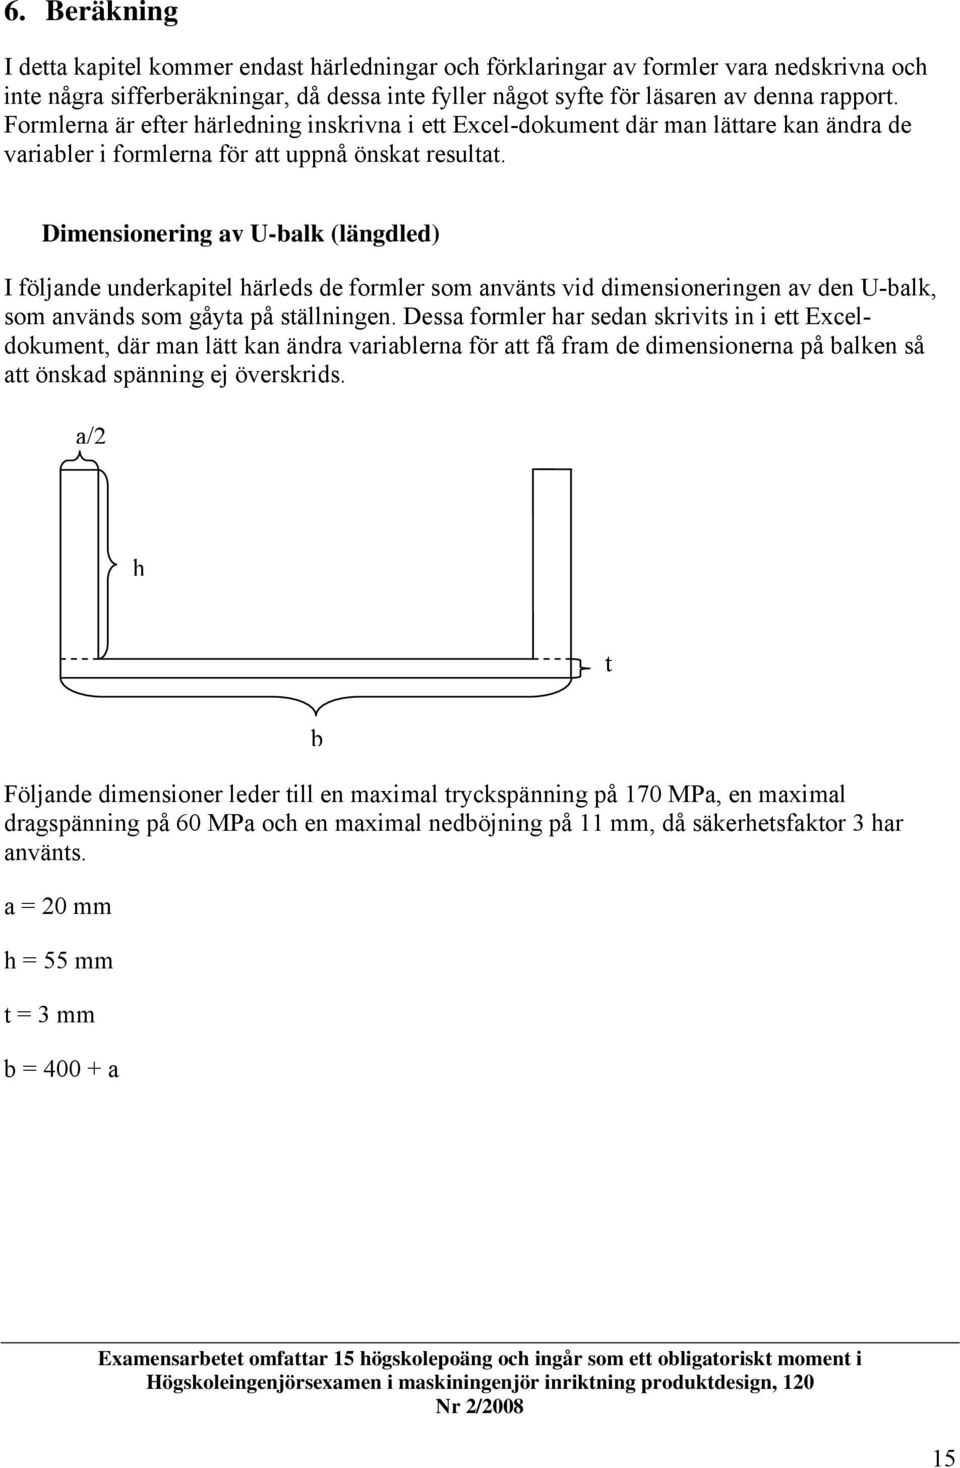 Dimensionering av U-bak (ängded) I föjande underkapite häreds de former som använts vid dimensioneringen av den U-bak, som används som gåyta på stäningen.